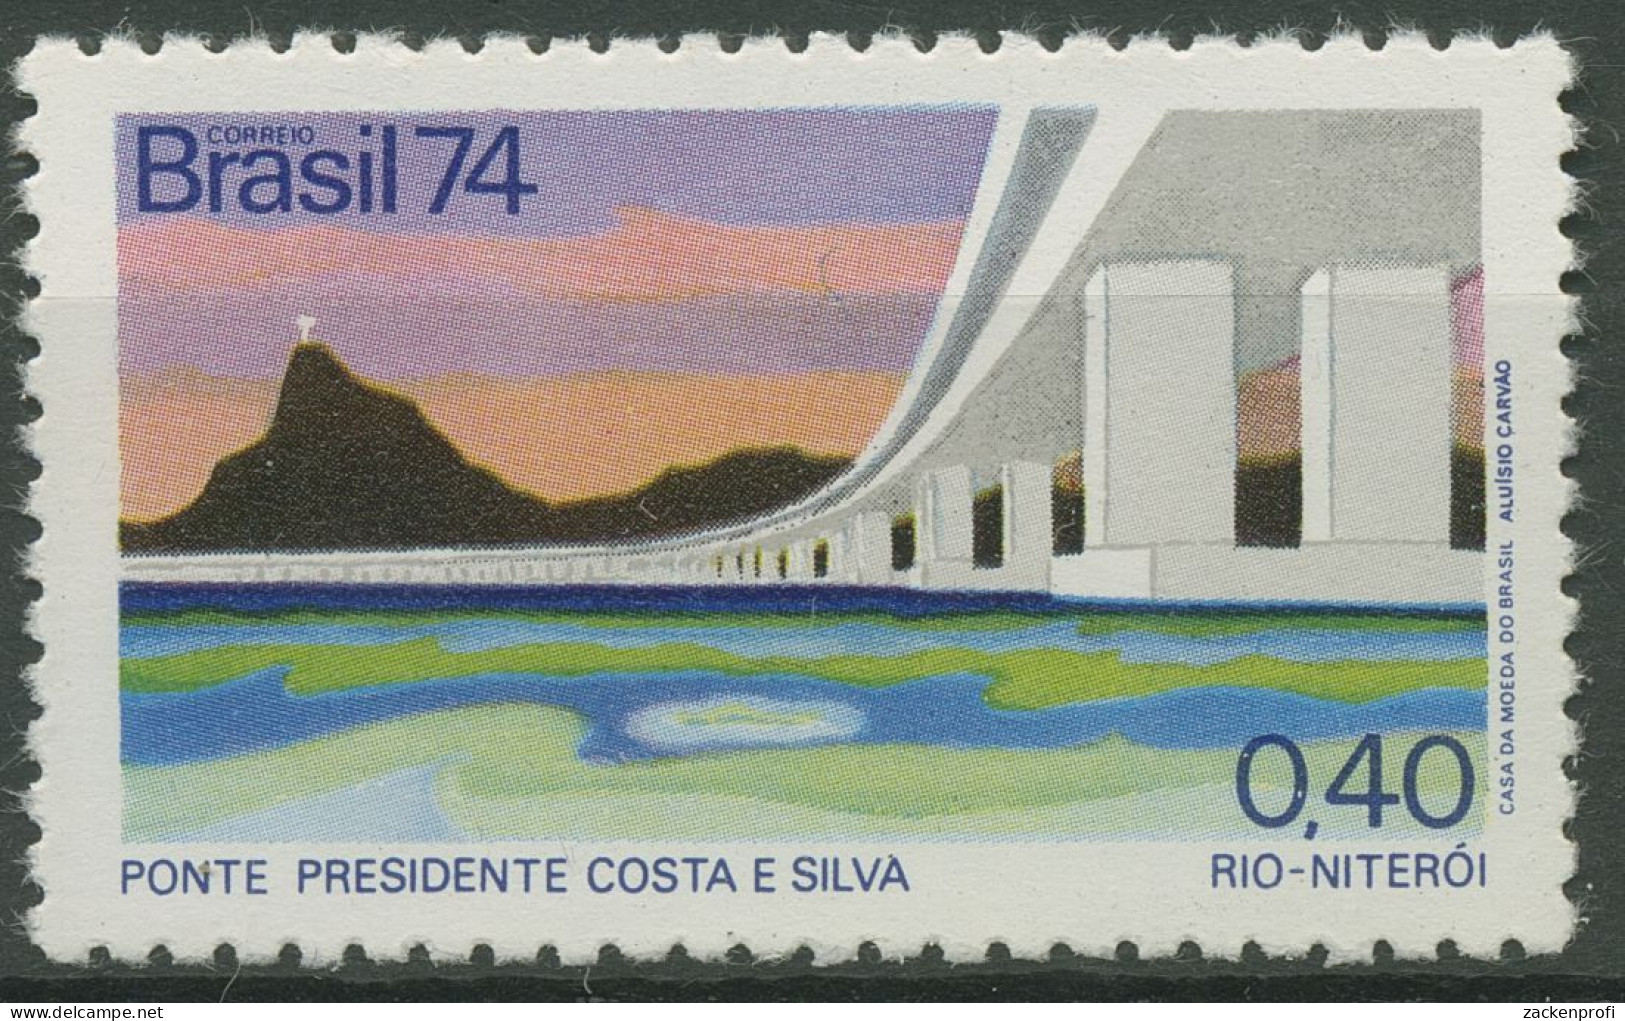 Brasilien 1974 Präsident-Costa-e-Silva-Brücke 1425 Postfrisch - Ongebruikt